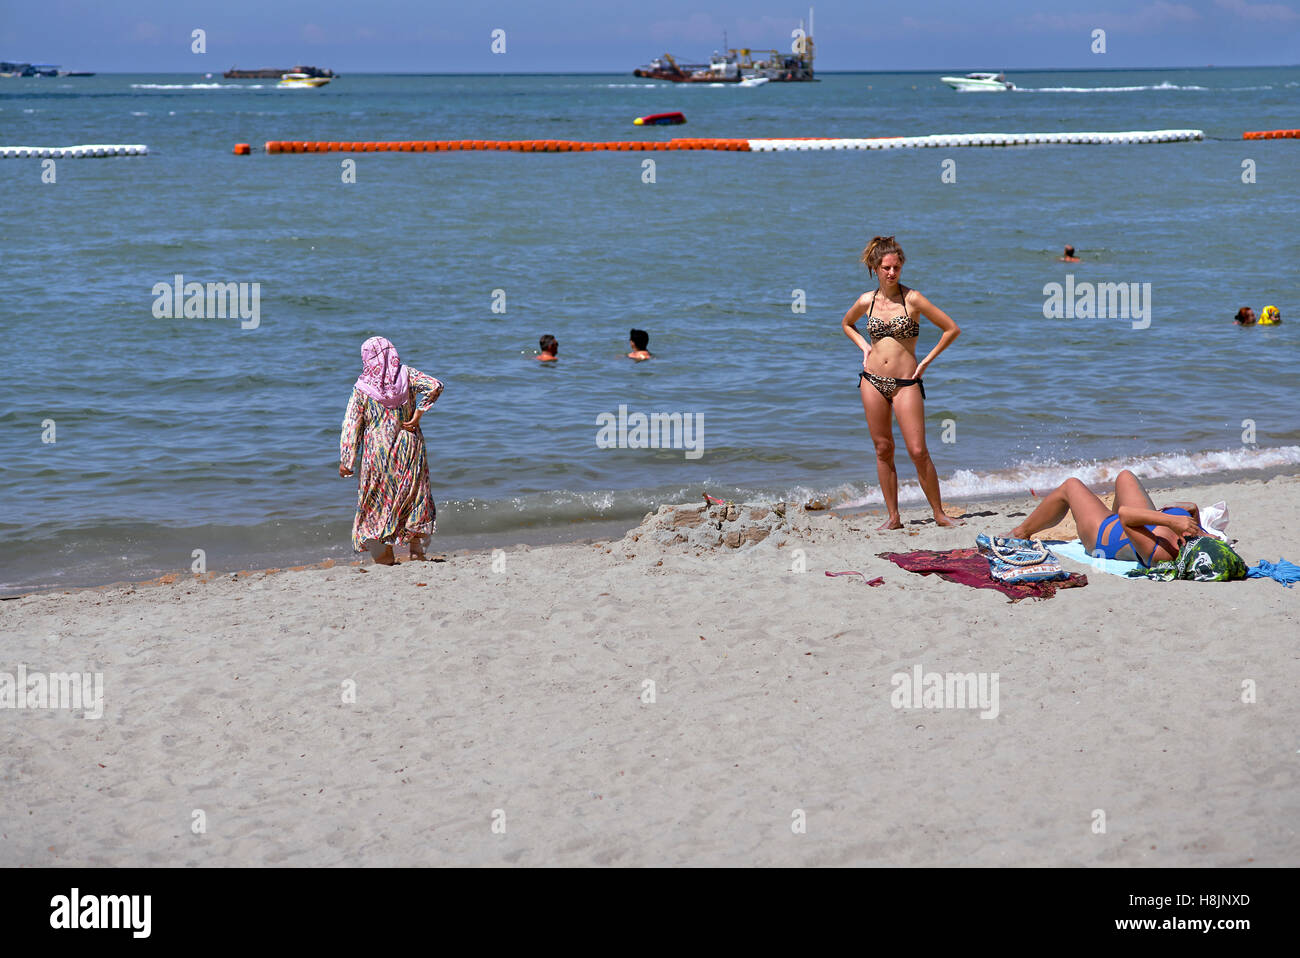 Collision culturelle. La différence culturelle de la plage porte des vêtements d'une femme occidentale libérée et de son homologue du Moyen-Orient Banque D'Images